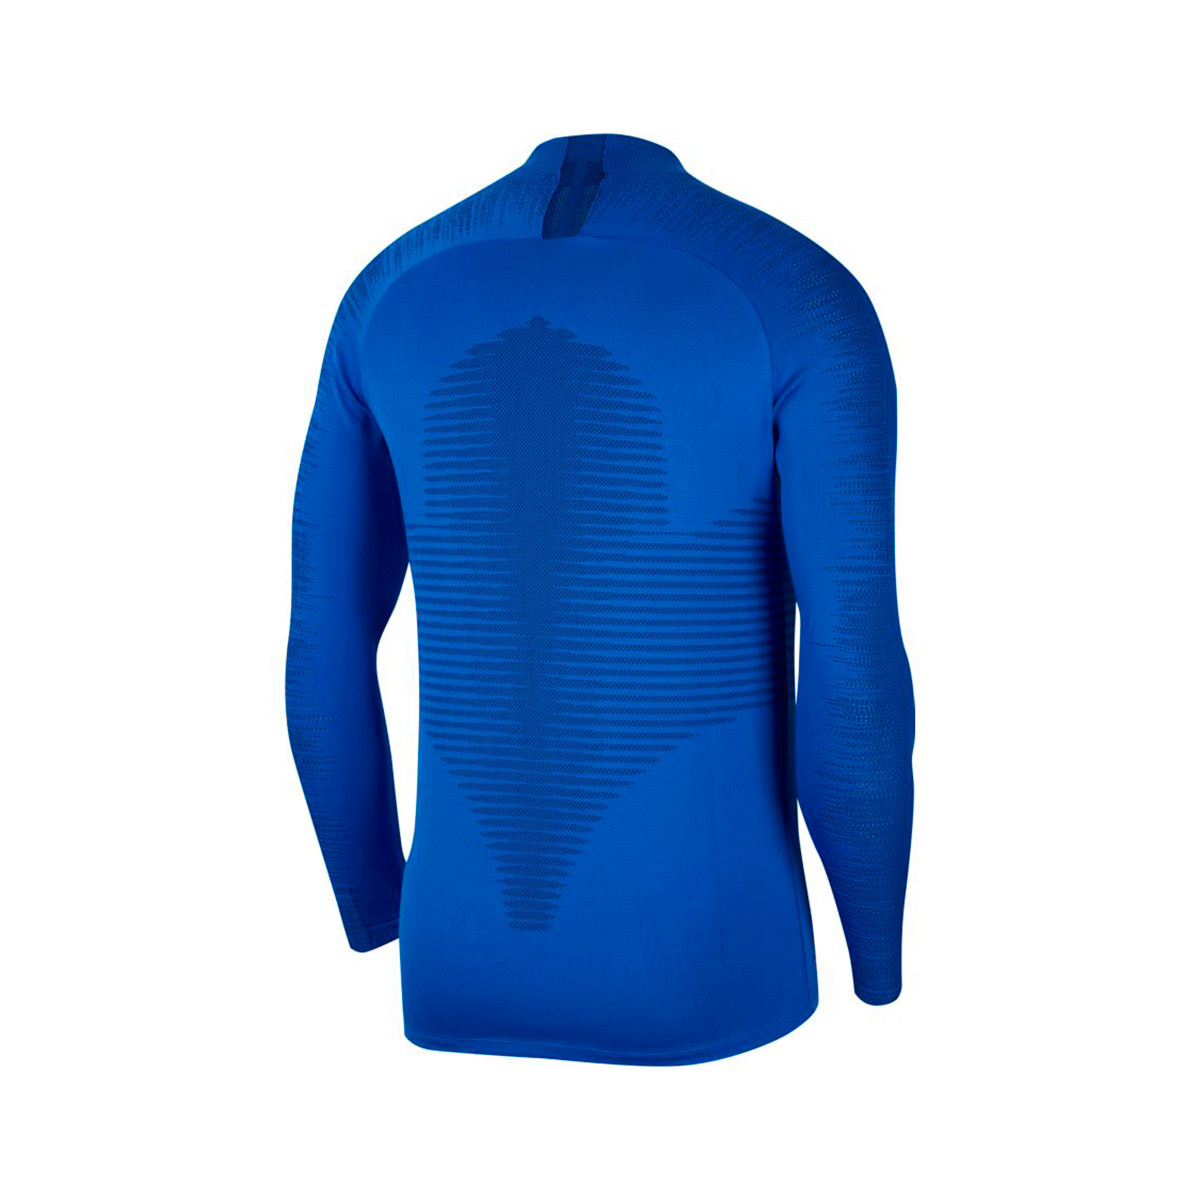 Sweatshirt Nike Chelsea FC Vaporknit 